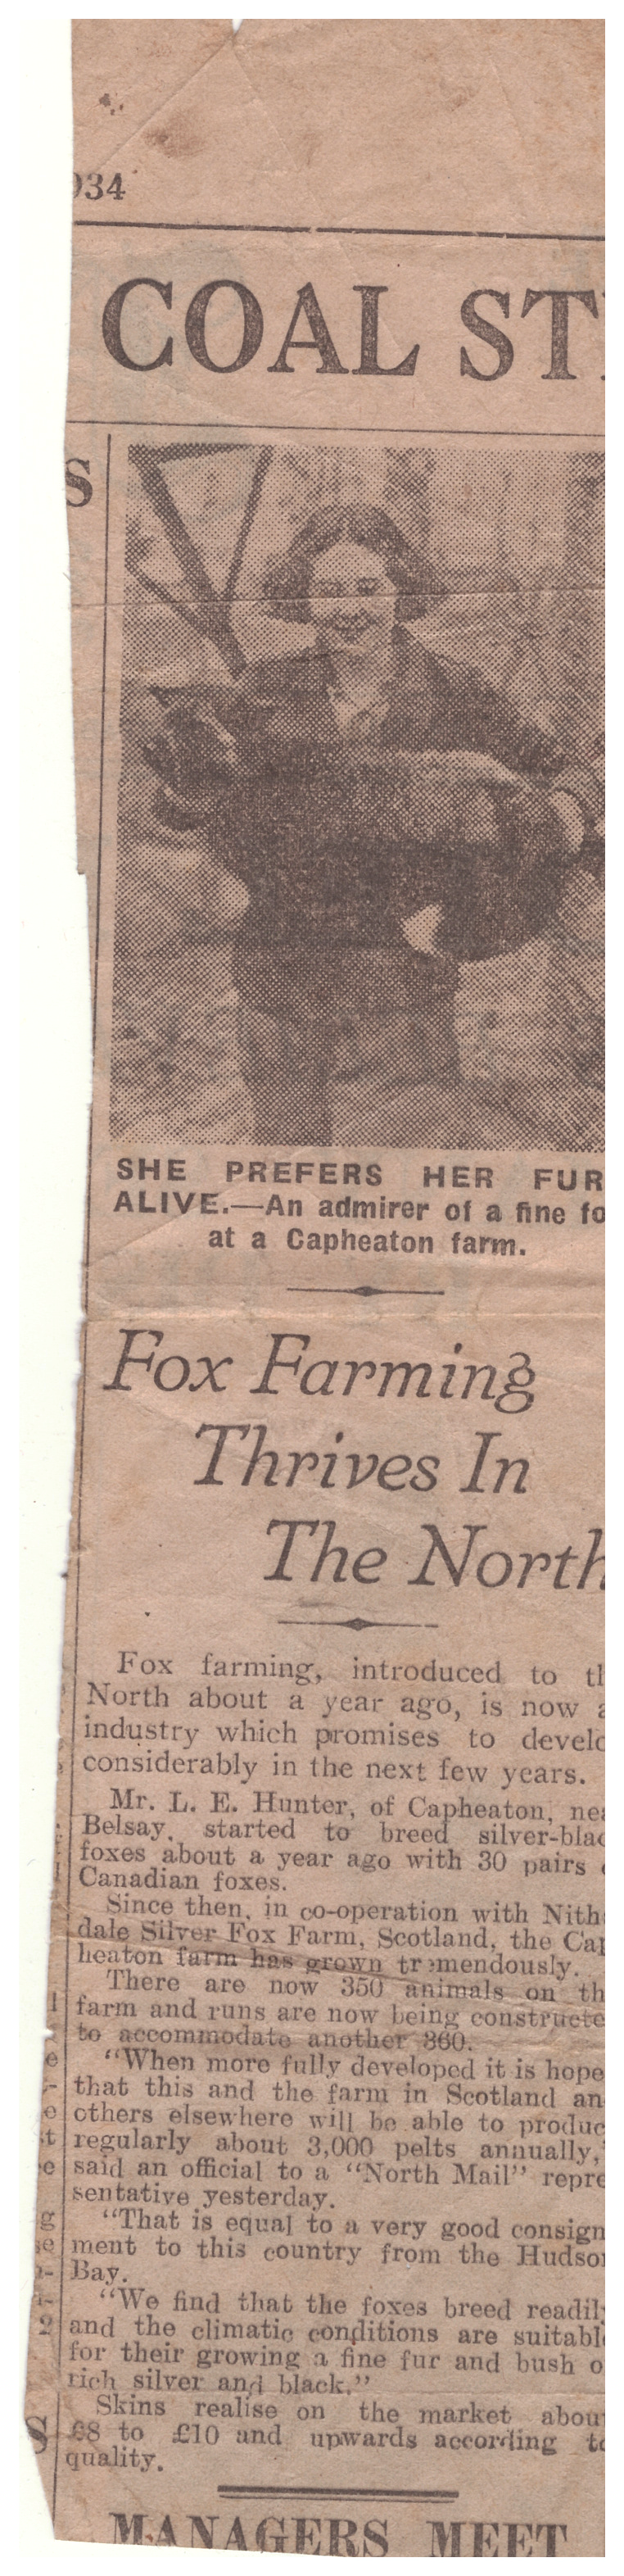 foxfarming1934Times.png